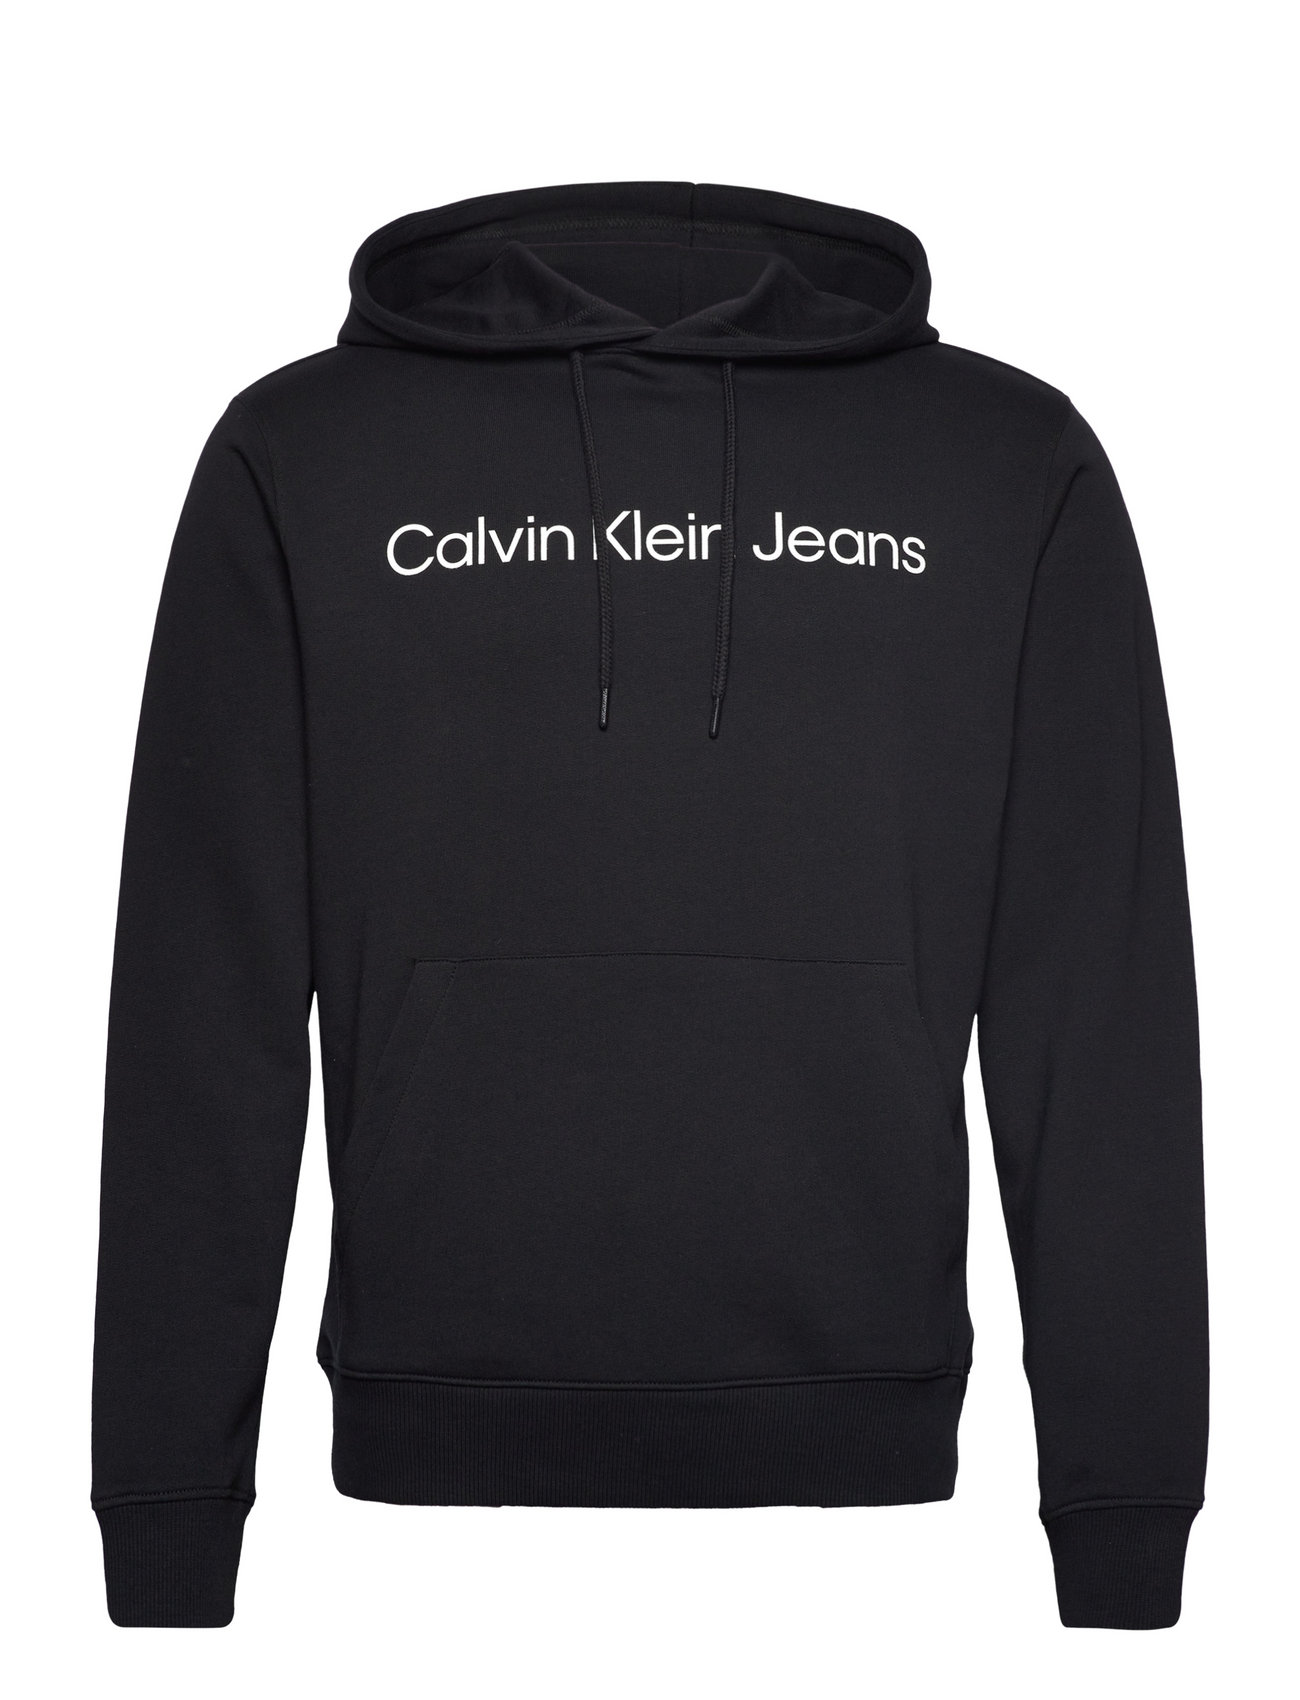 Calvin Klein Jeans - Logo Hoodies Hoodie Core Institutional